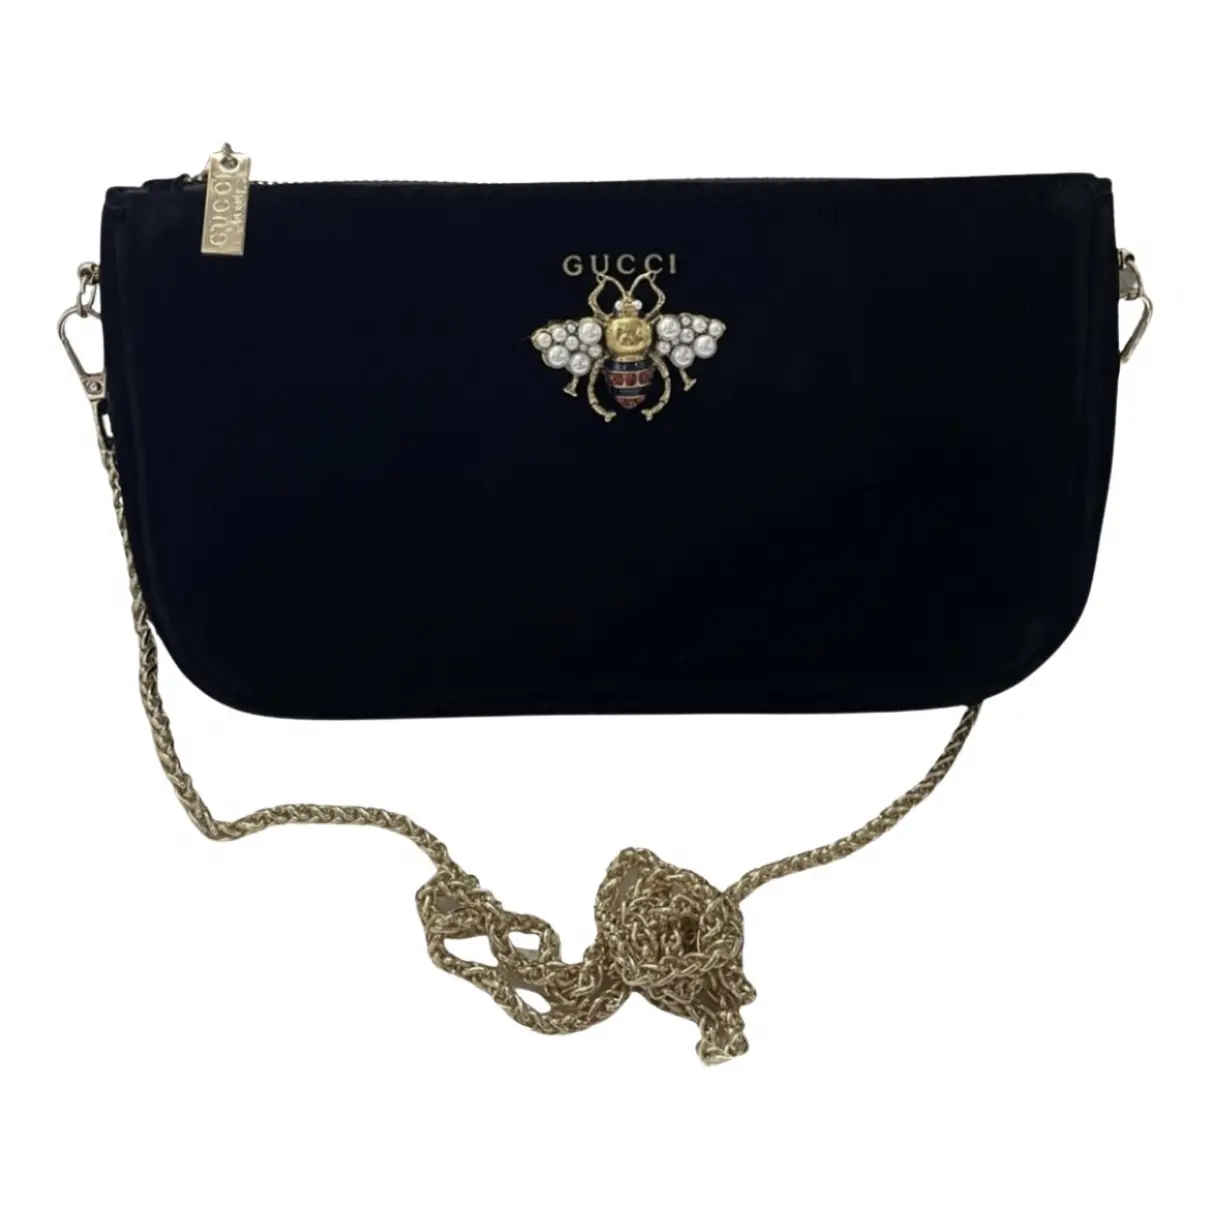 Velvet handbag Gucci